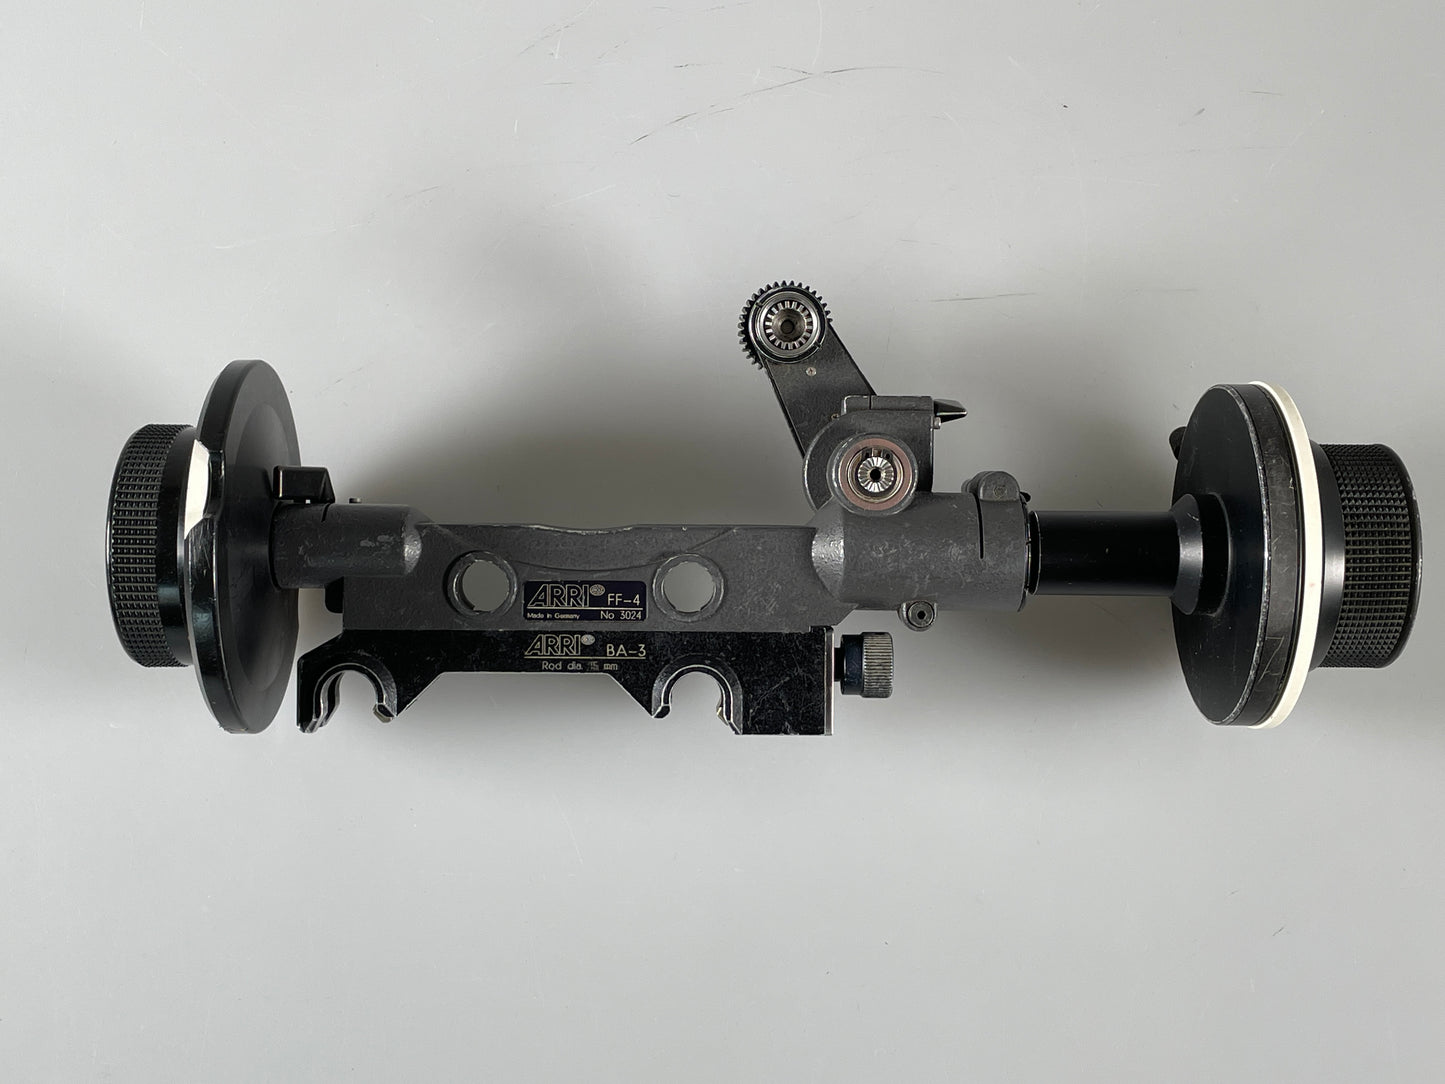 ARRI FF-4 Follow Focus Cine Set w/ BA3 15mm rod adapter